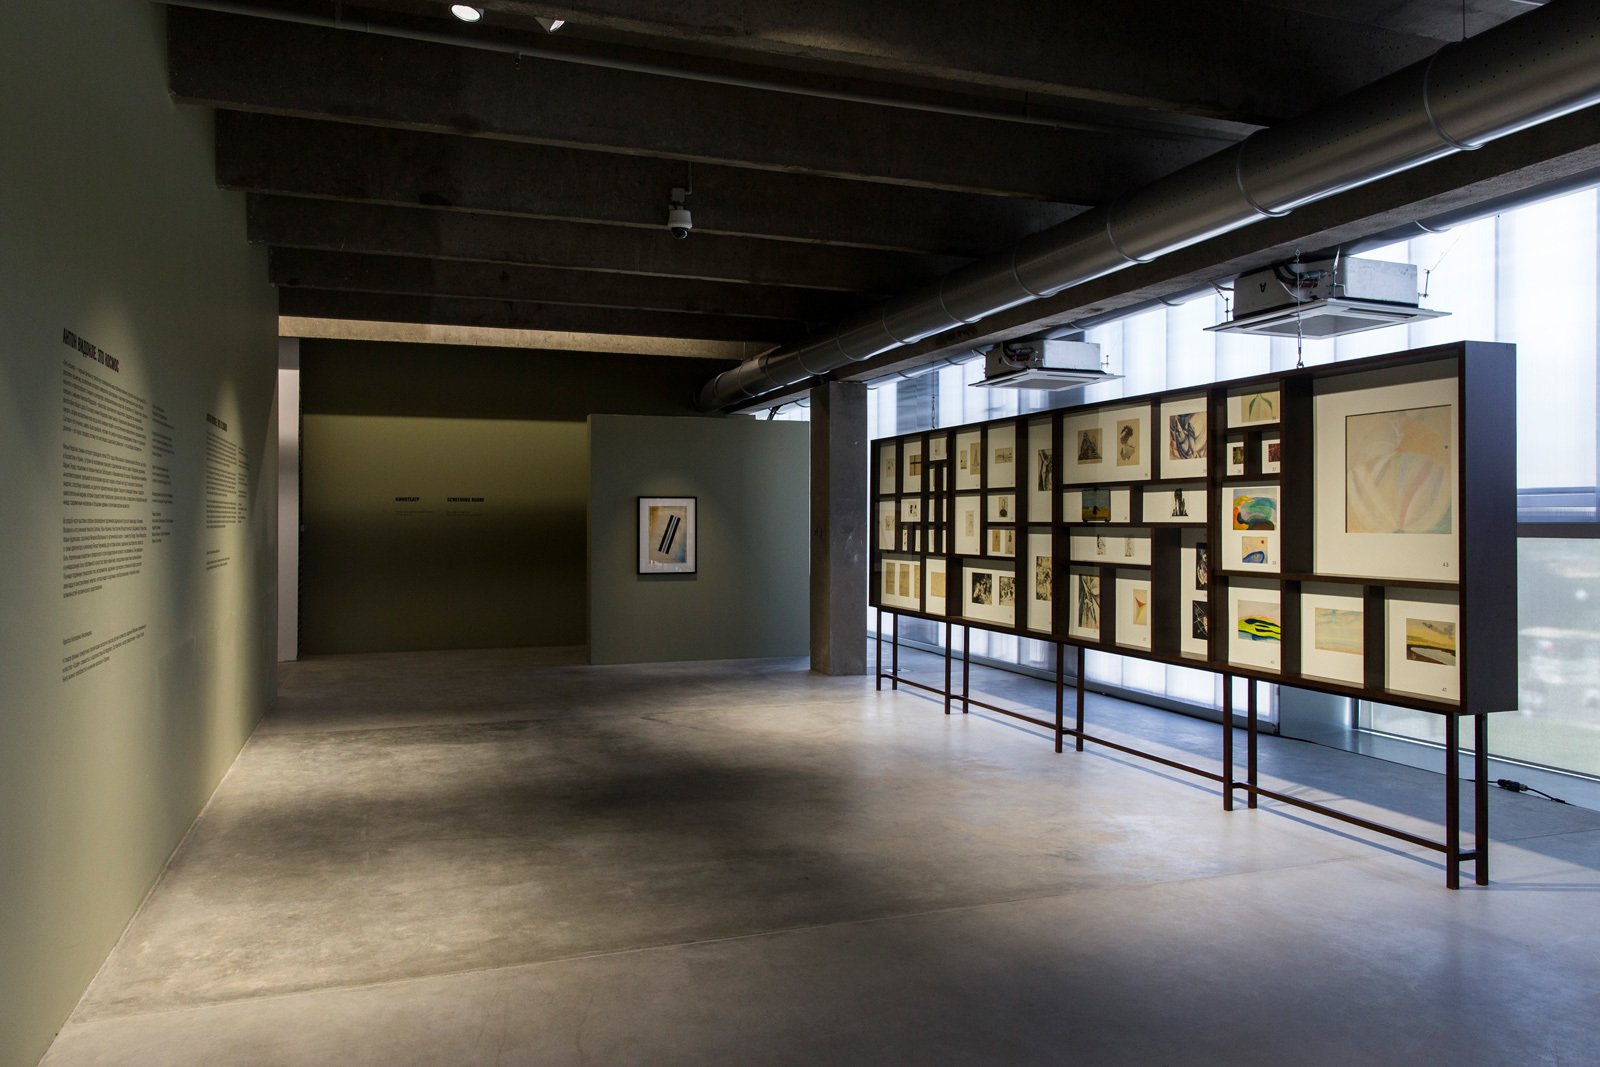 Вид экспозиции, Музей современного искусства &laquo;Гараж&raquo;, 2015&nbsp;&copy; Музей современного искусства &laquo;Гараж&raquo;&nbsp;